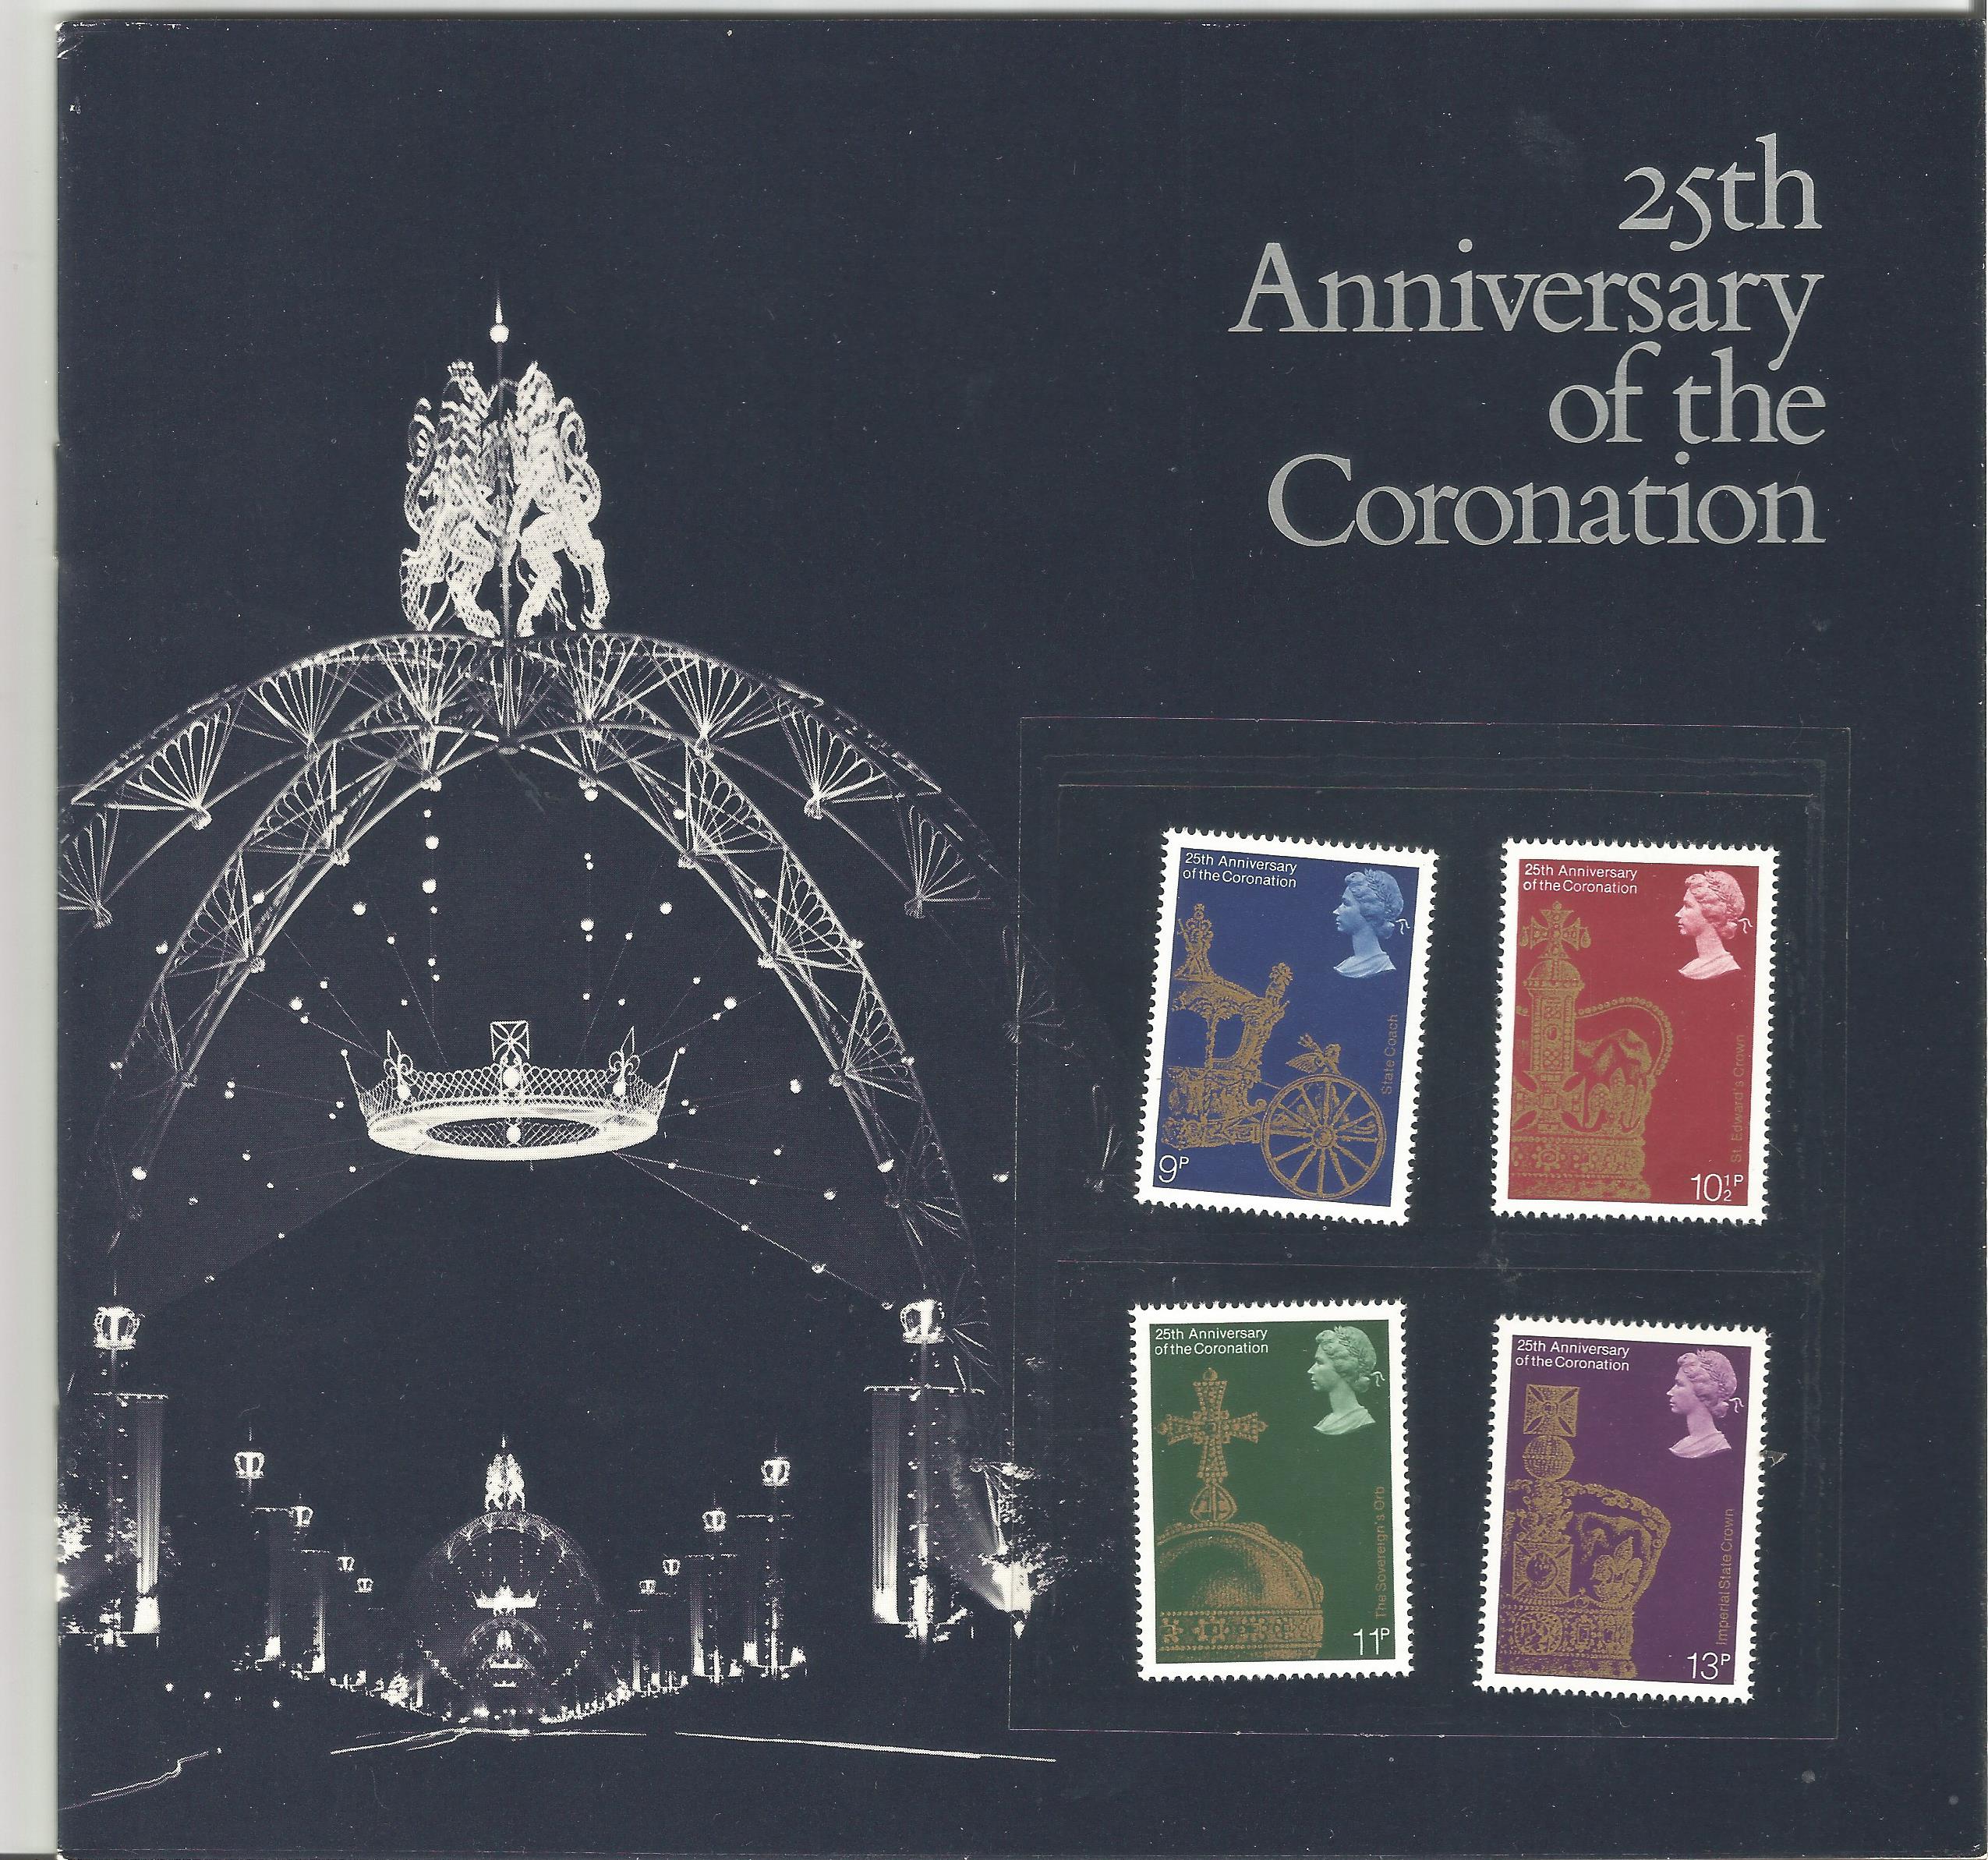 25th Anniversary of the Coronation Commemorative Souvenir Presentation Book, 1978. Good condition.